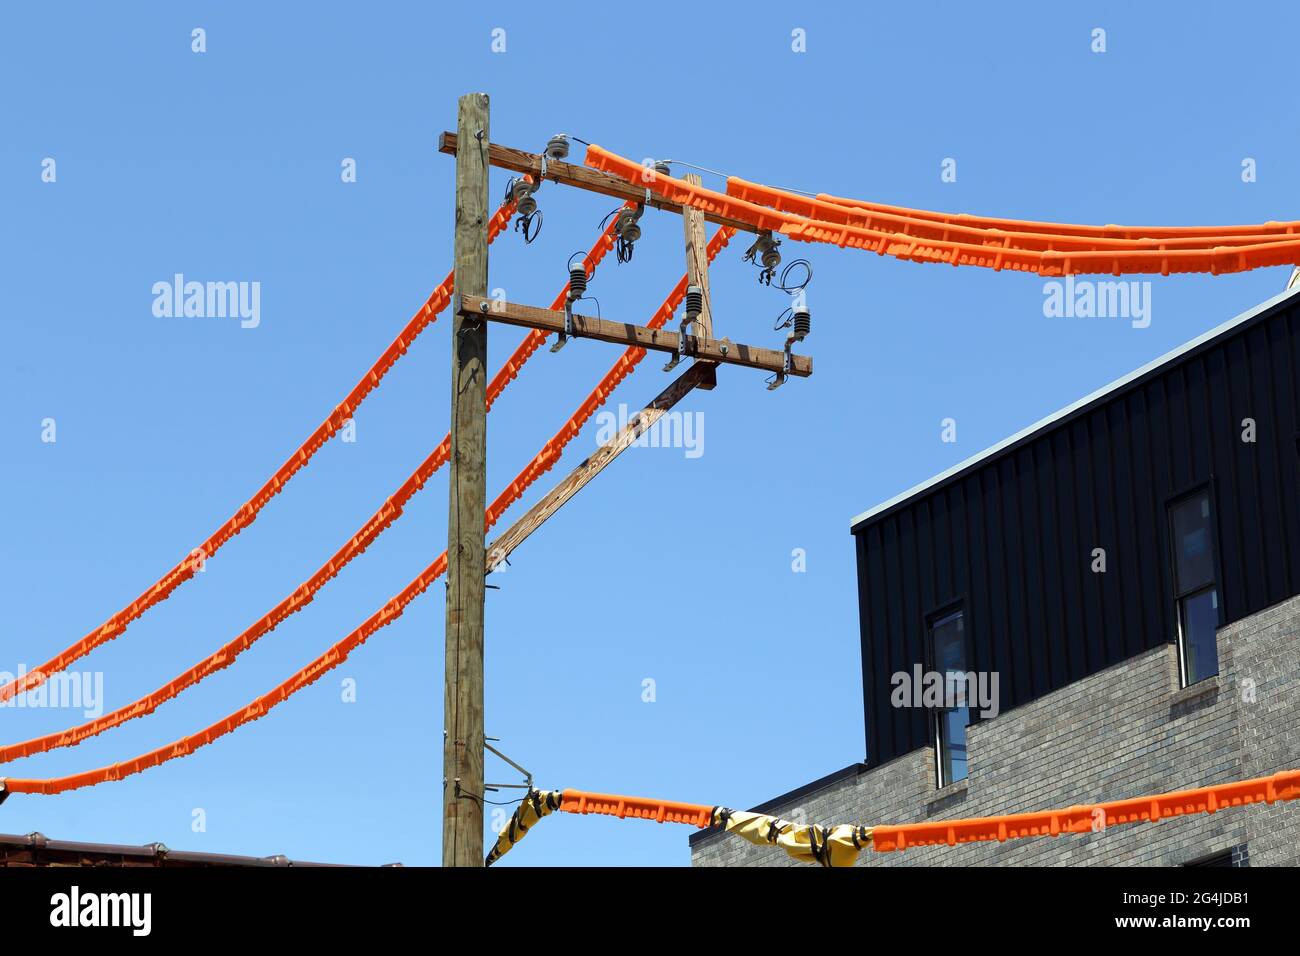 Capots de ligne d'alimentation, protections de ligne de sécurité orange couvrant les fils électriques sur un poteau de service près d'un chantier de construction en matière de sécurité de construction Banque D'Images